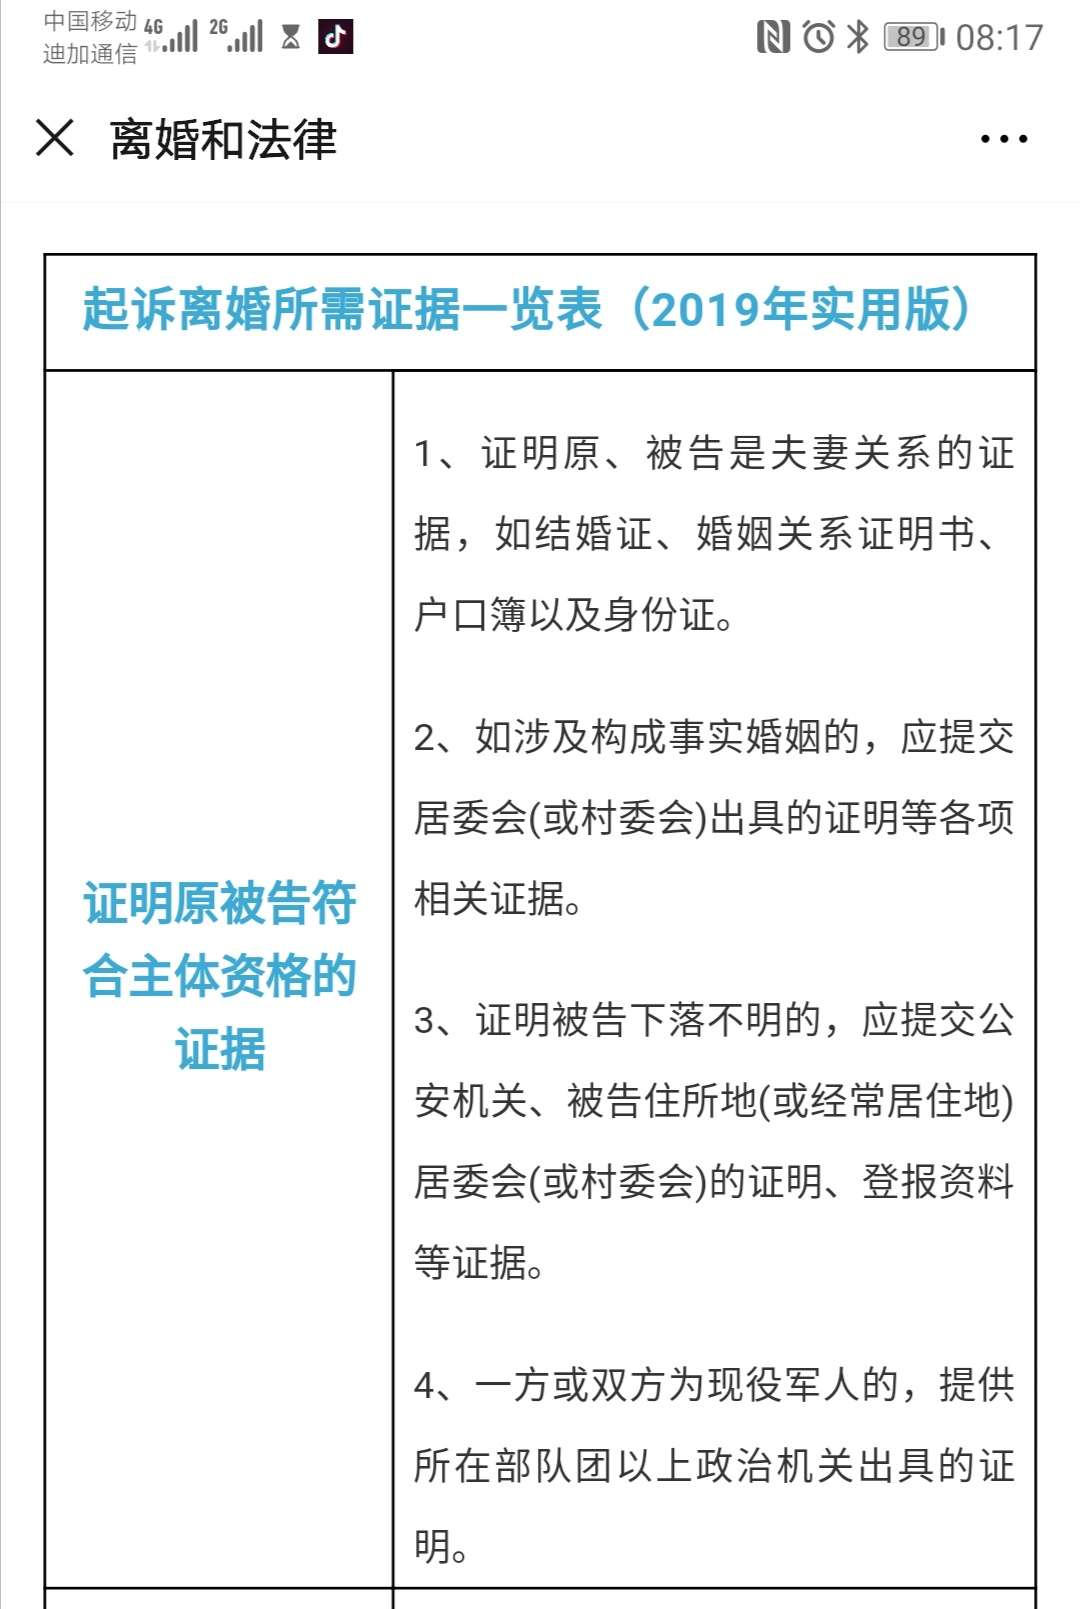 上海离婚取证公司_福州离婚取证公司_广州离婚取证公司